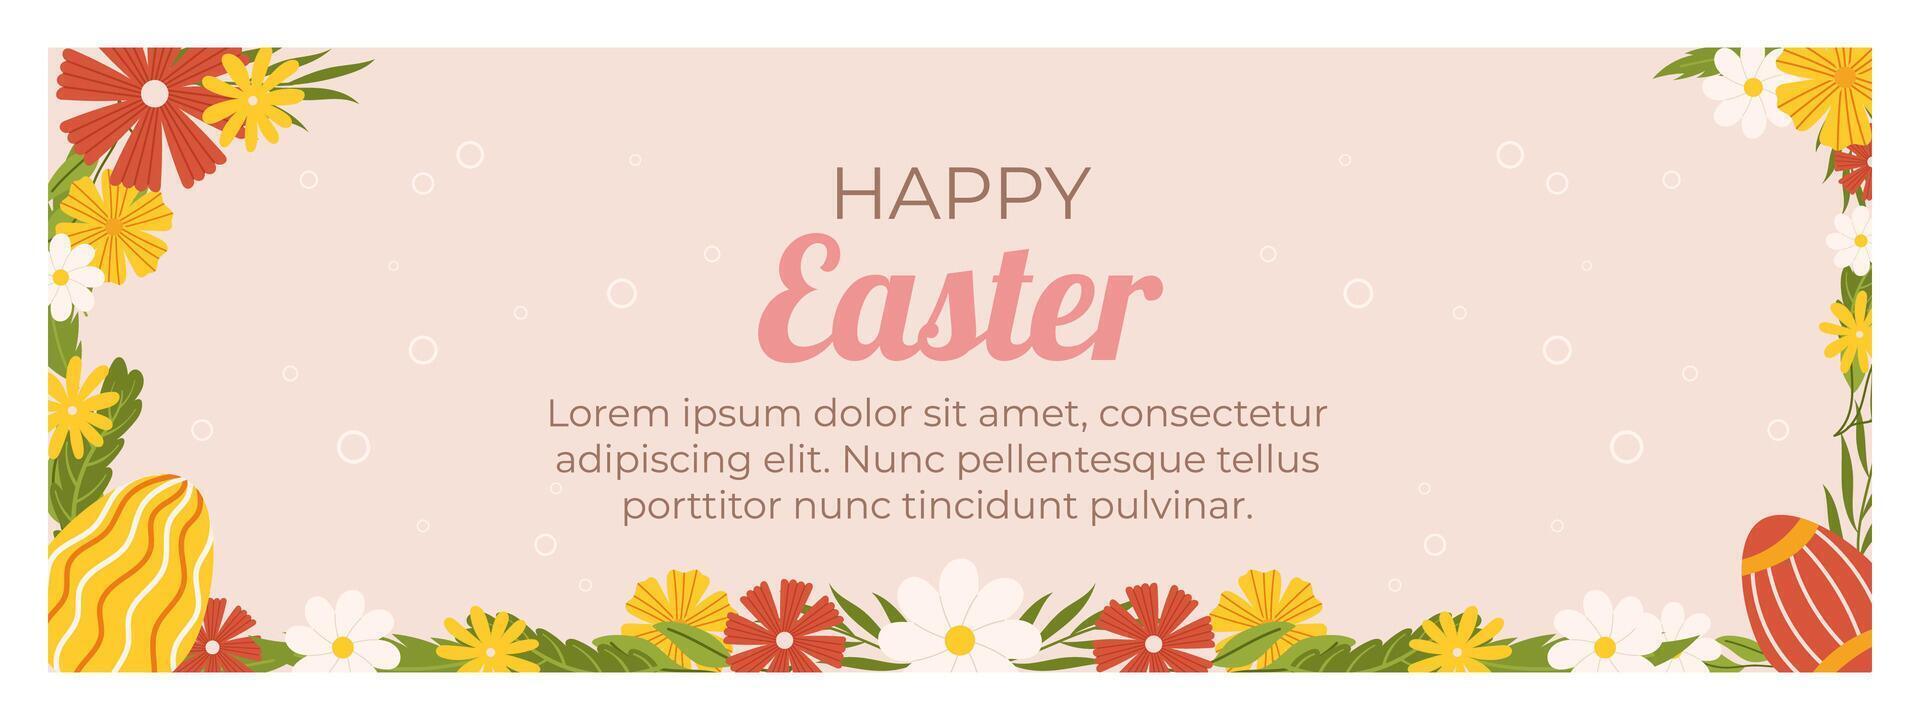 Ostern horizontal Banner Vorlage. Design zum Feier Frühling Urlaub gemalt Eier und Blumen- Rahmen um vektor